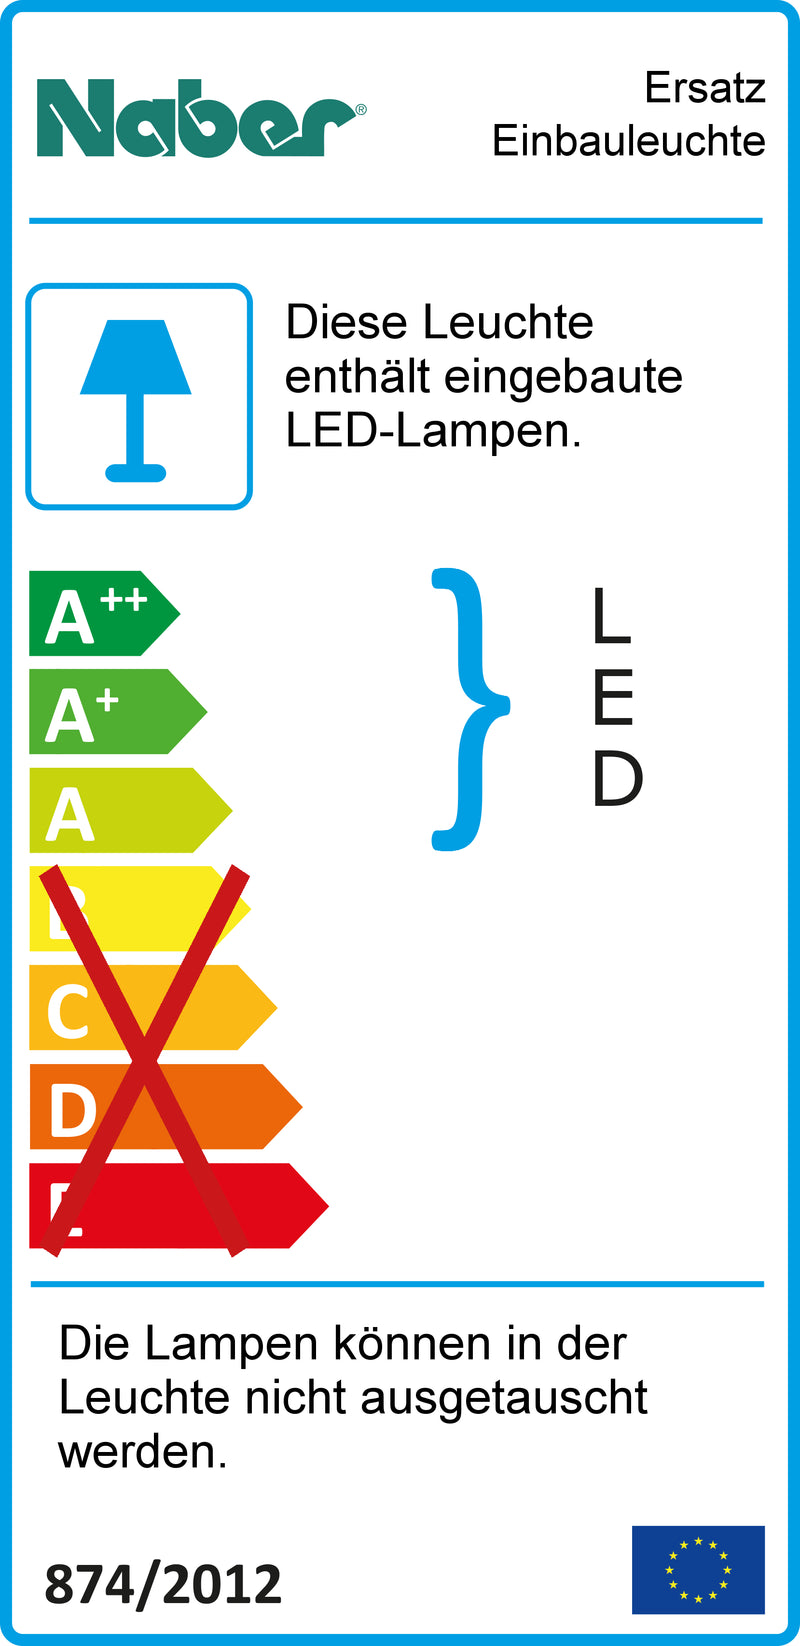 E-Label zu Ersatz Einbauleuchte als Variante 3000 K warmweiß von Naber GmbH in der Kategorie Lichttechnik in Österreich auf conceptshop.at